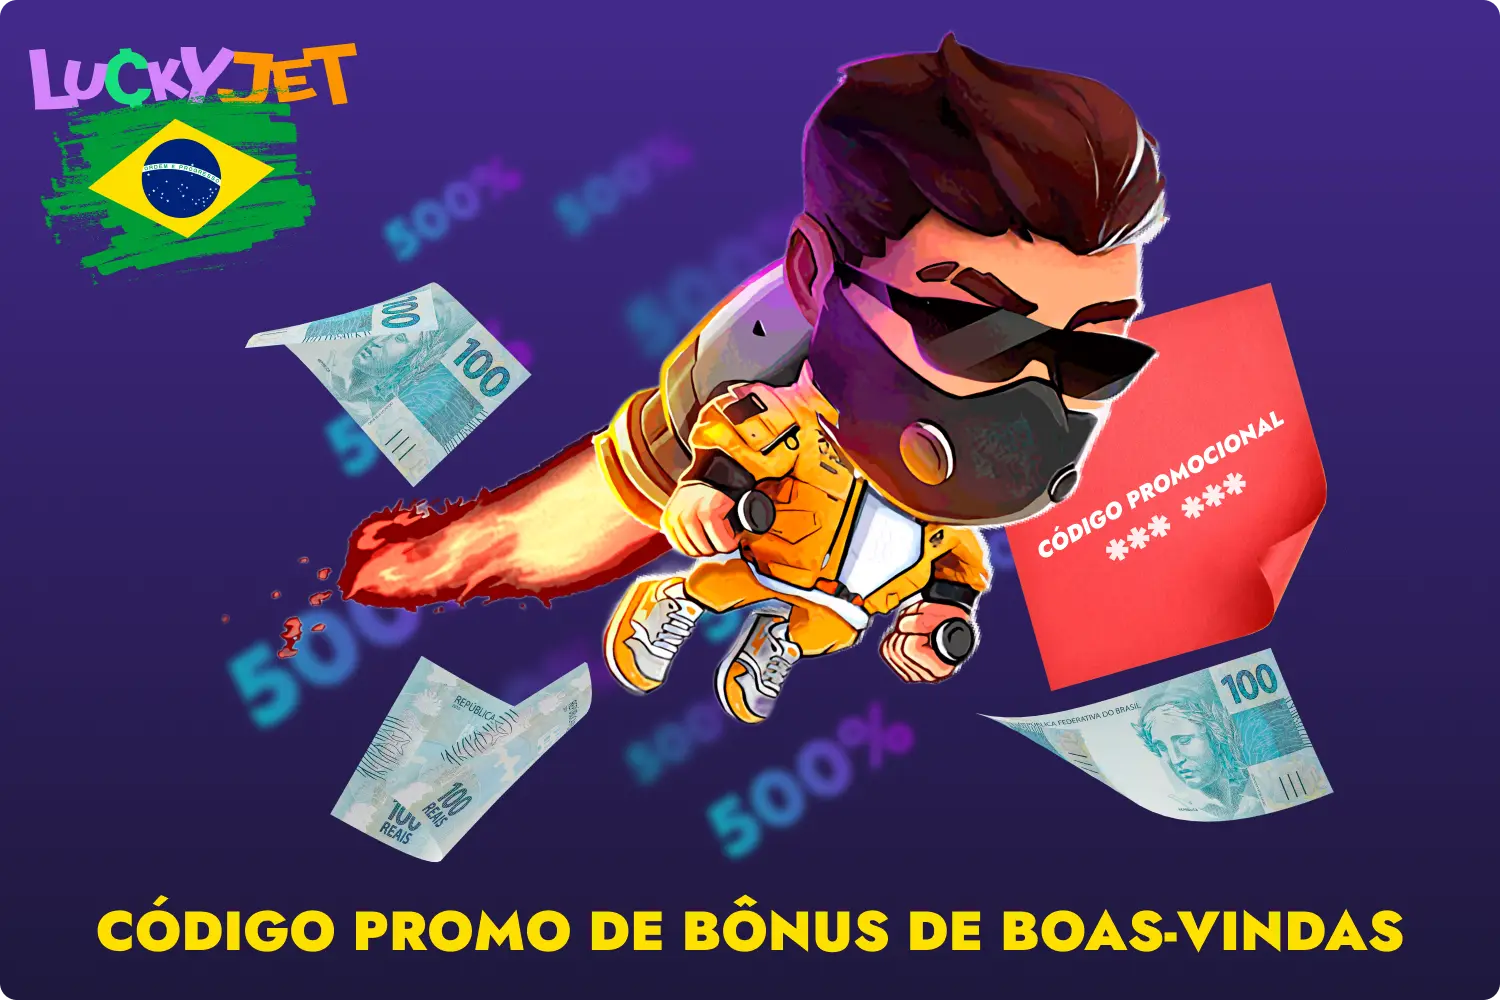 Ao introduzir o código promocional no site 1win, o jogador brasileiro recebe um bónus Lucky Jet de 500% nos primeiros 4 depósitos